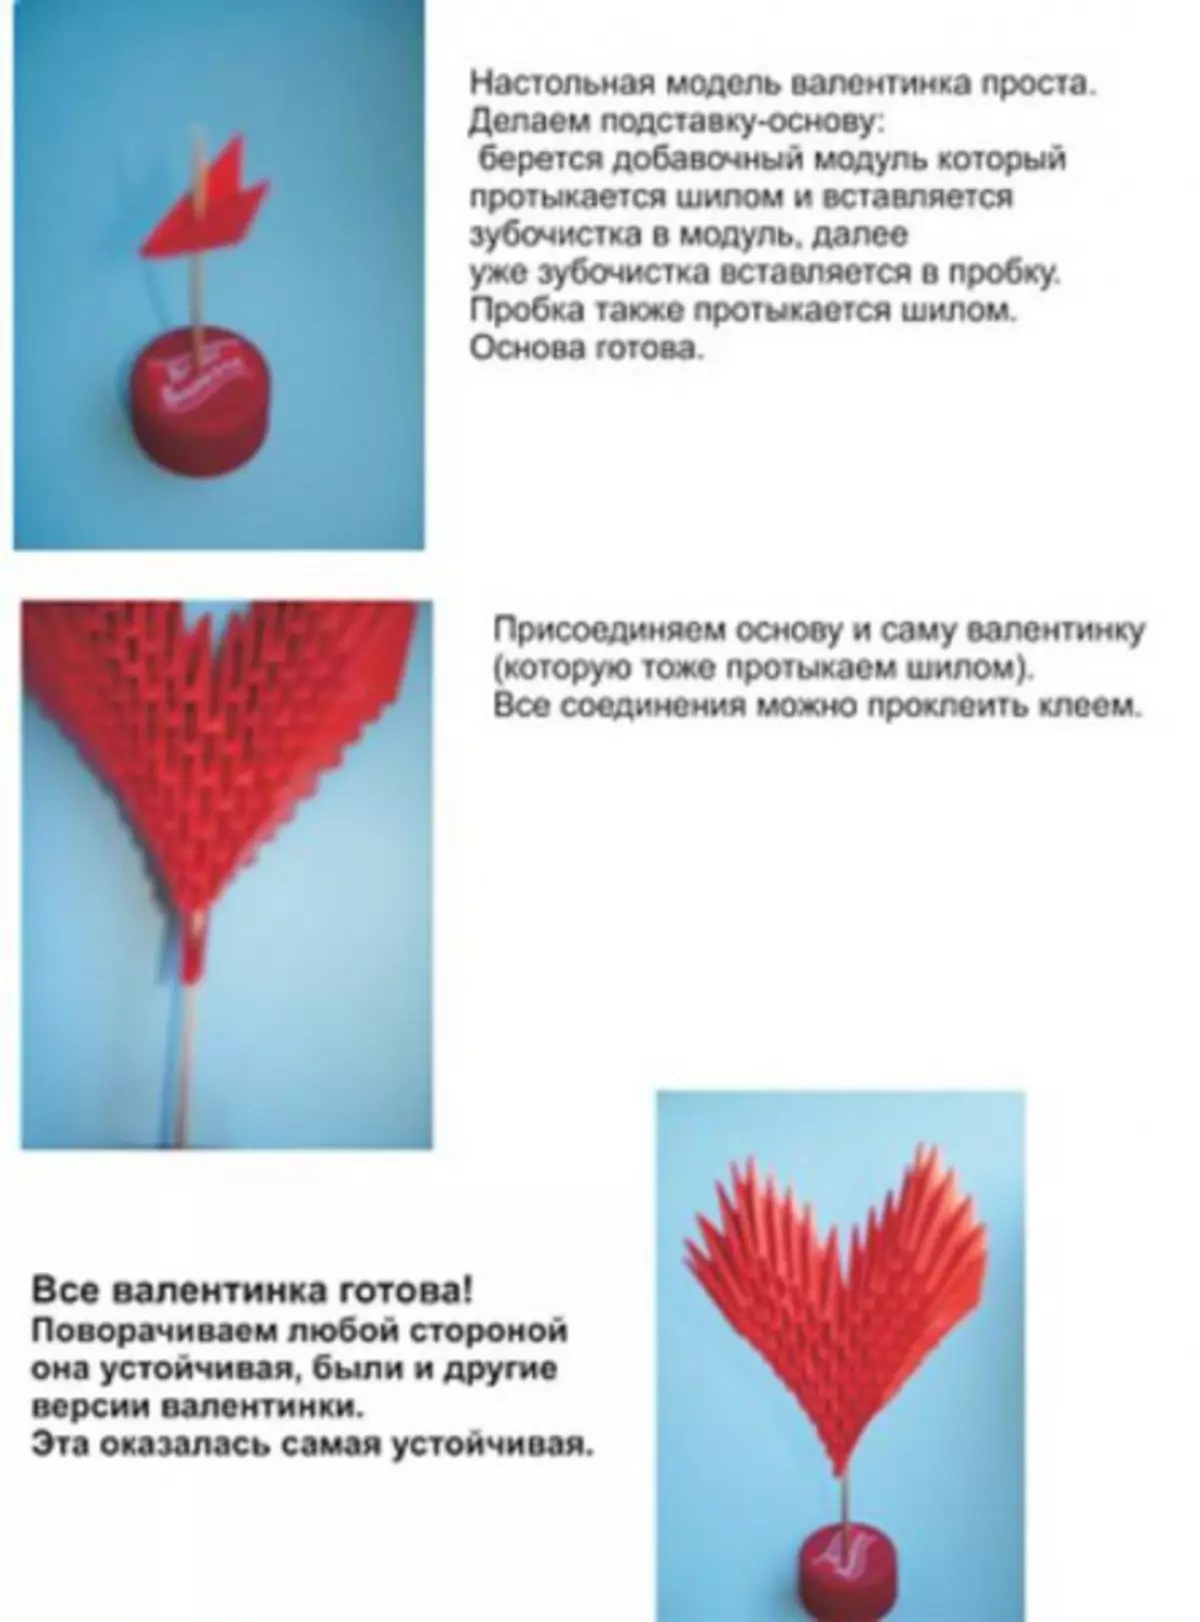 Rusçalardaki Origami Şemaları: Yeni başlayanlar için basit dersler